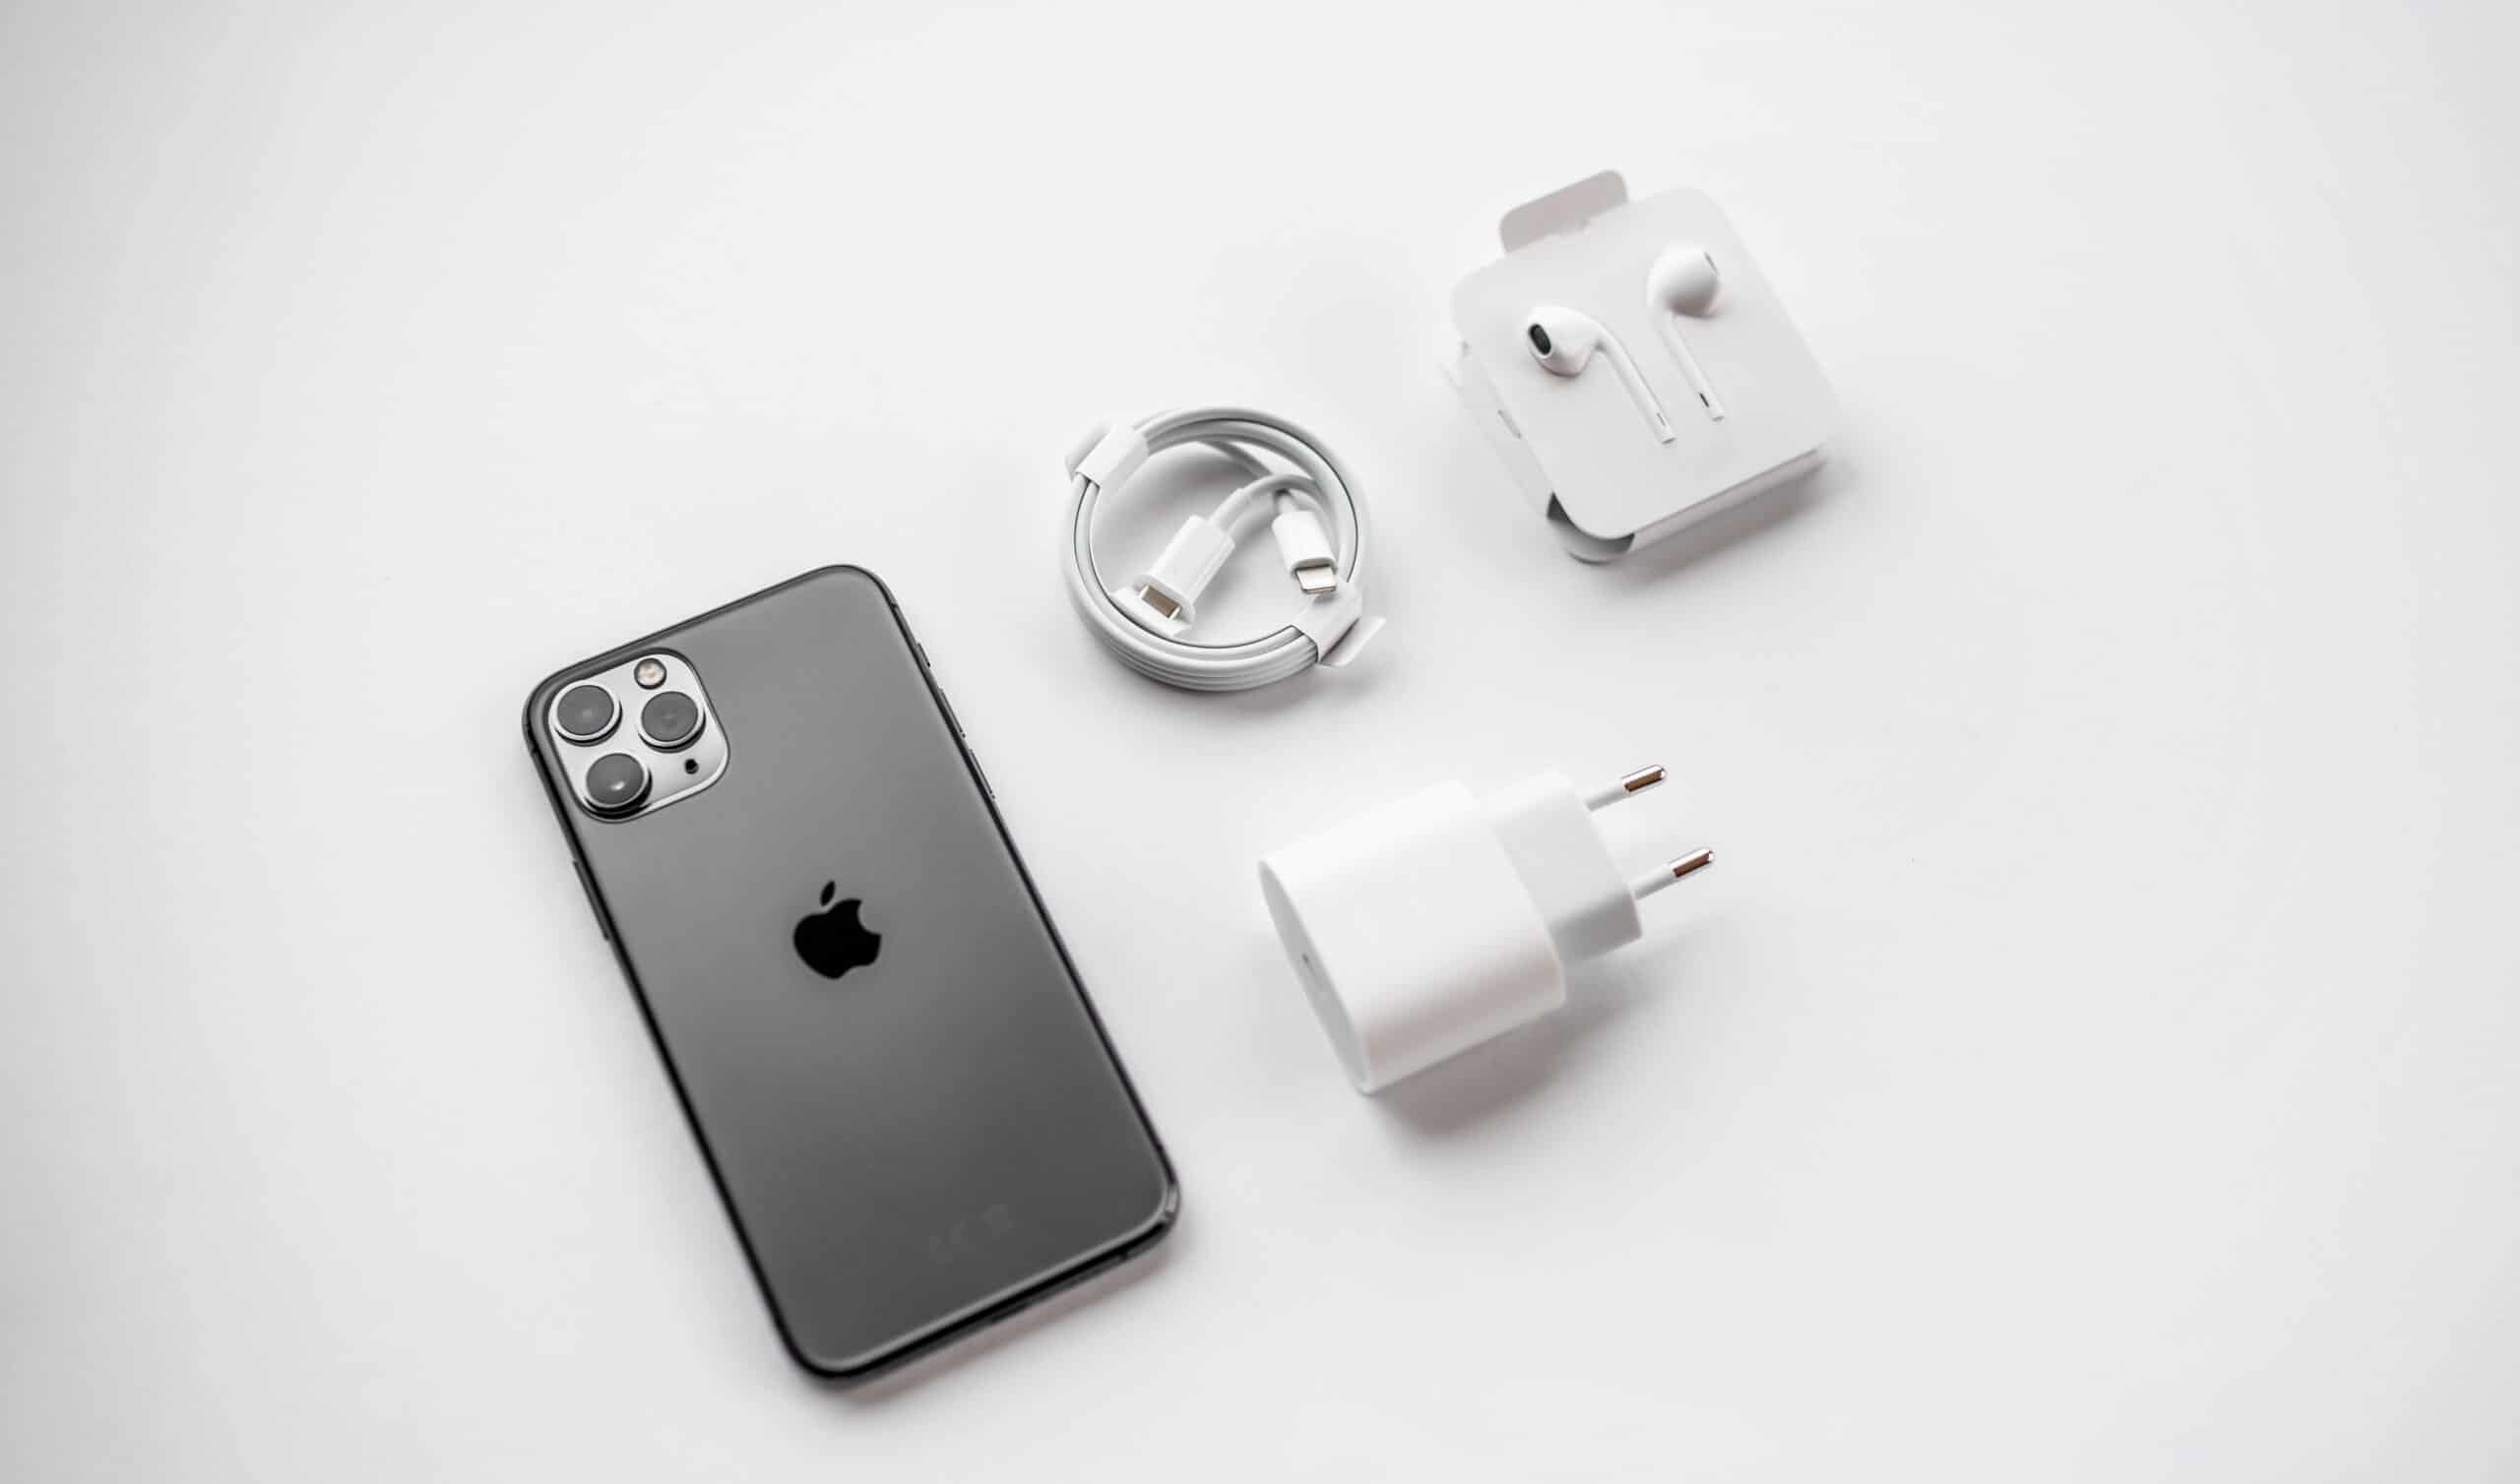 iPhone 11 Pro com acessórios: cabo Lightning, fones de ouvido EarPods e carregador de tomada